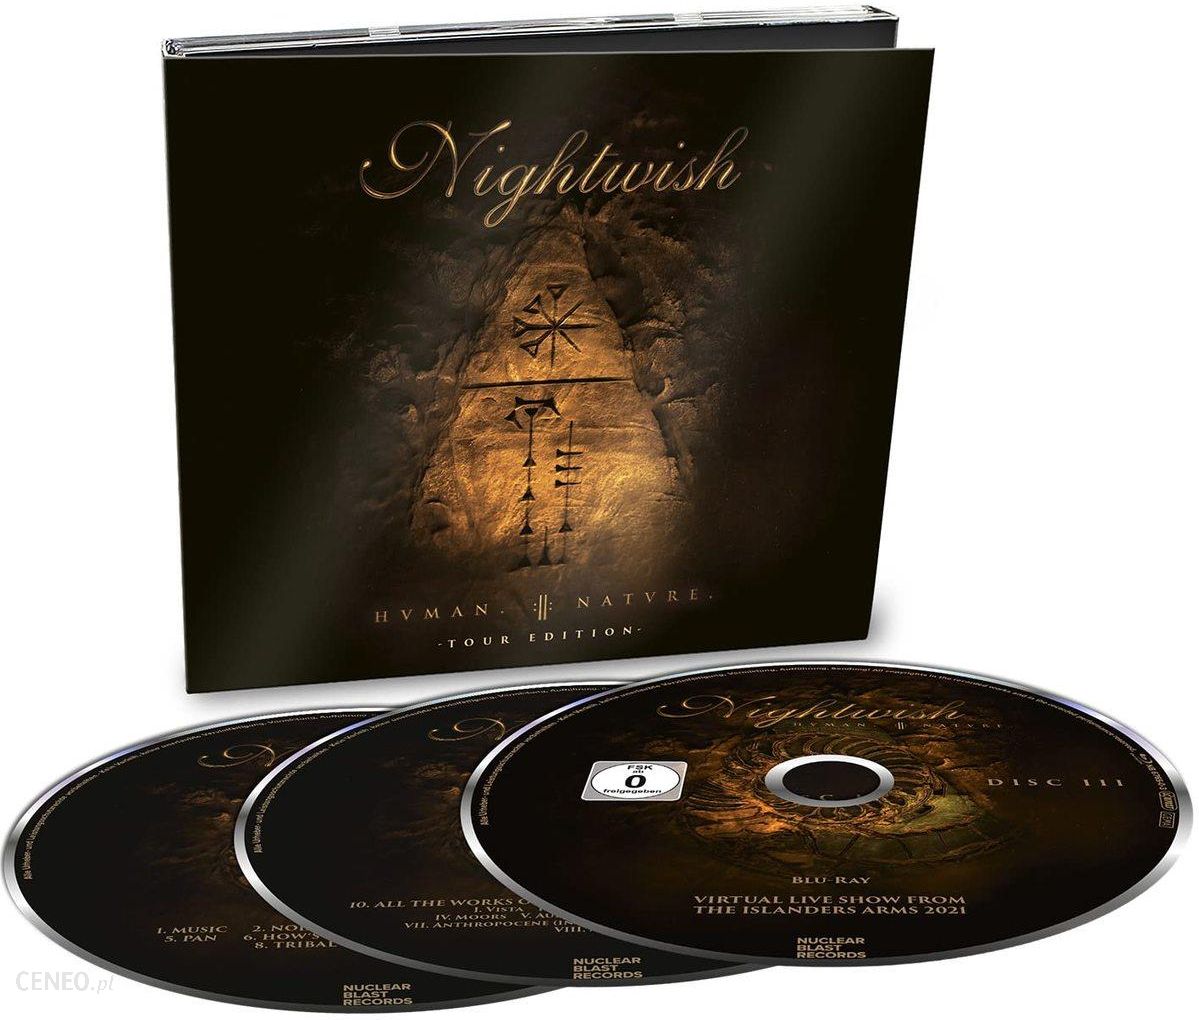 Płyta kompaktowa Nightwish: Human Nature Tour Edition [Blu-Ray]+[2CD] - Ceny i opinie - Ceneo.pl